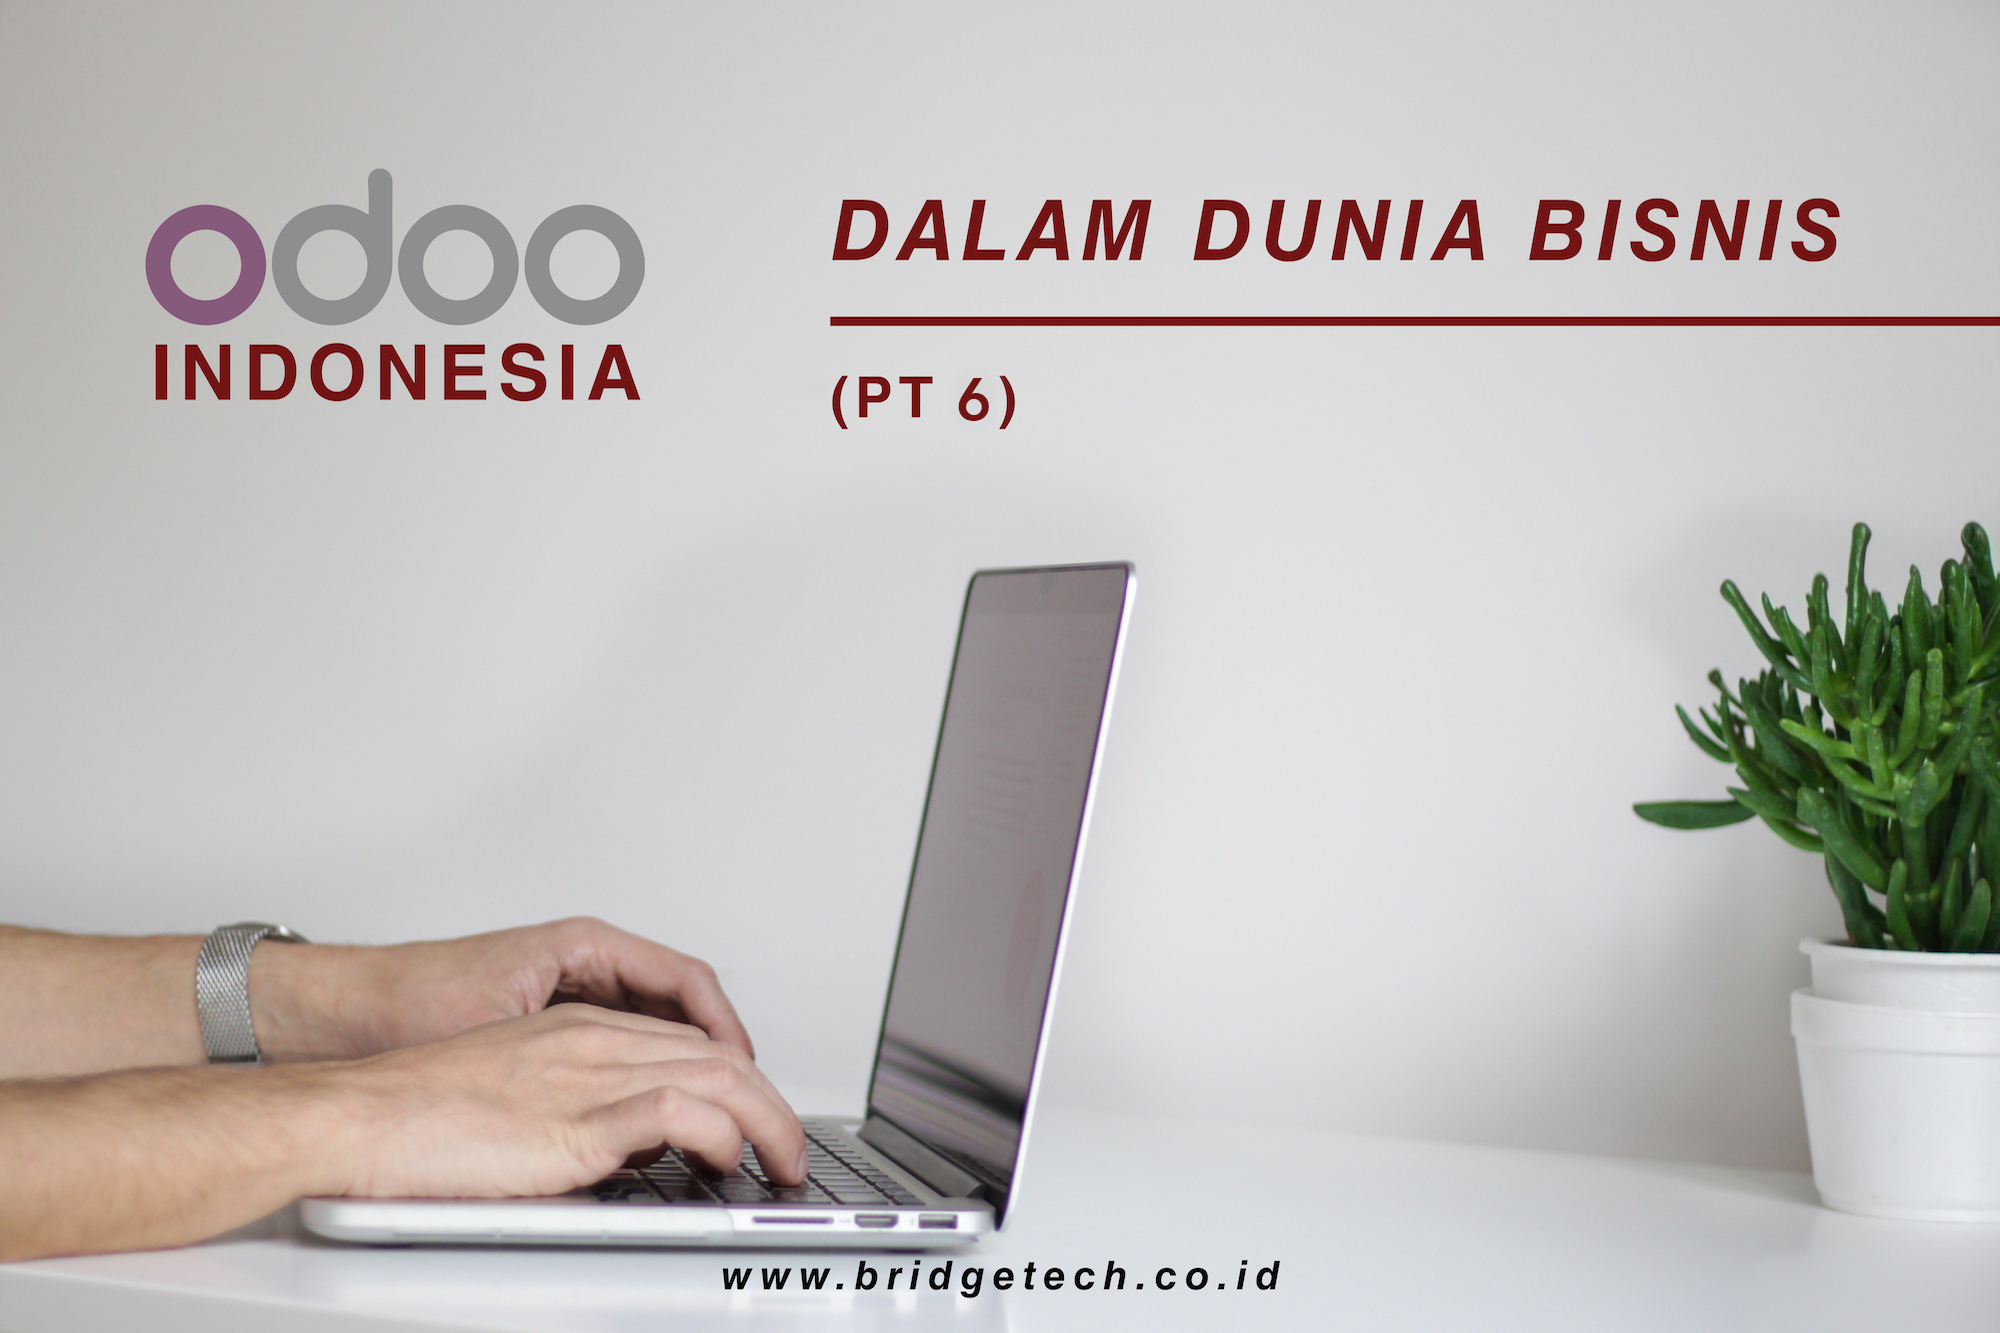 Odoo Indonesia dalam dunia bisnis (Pt.6)